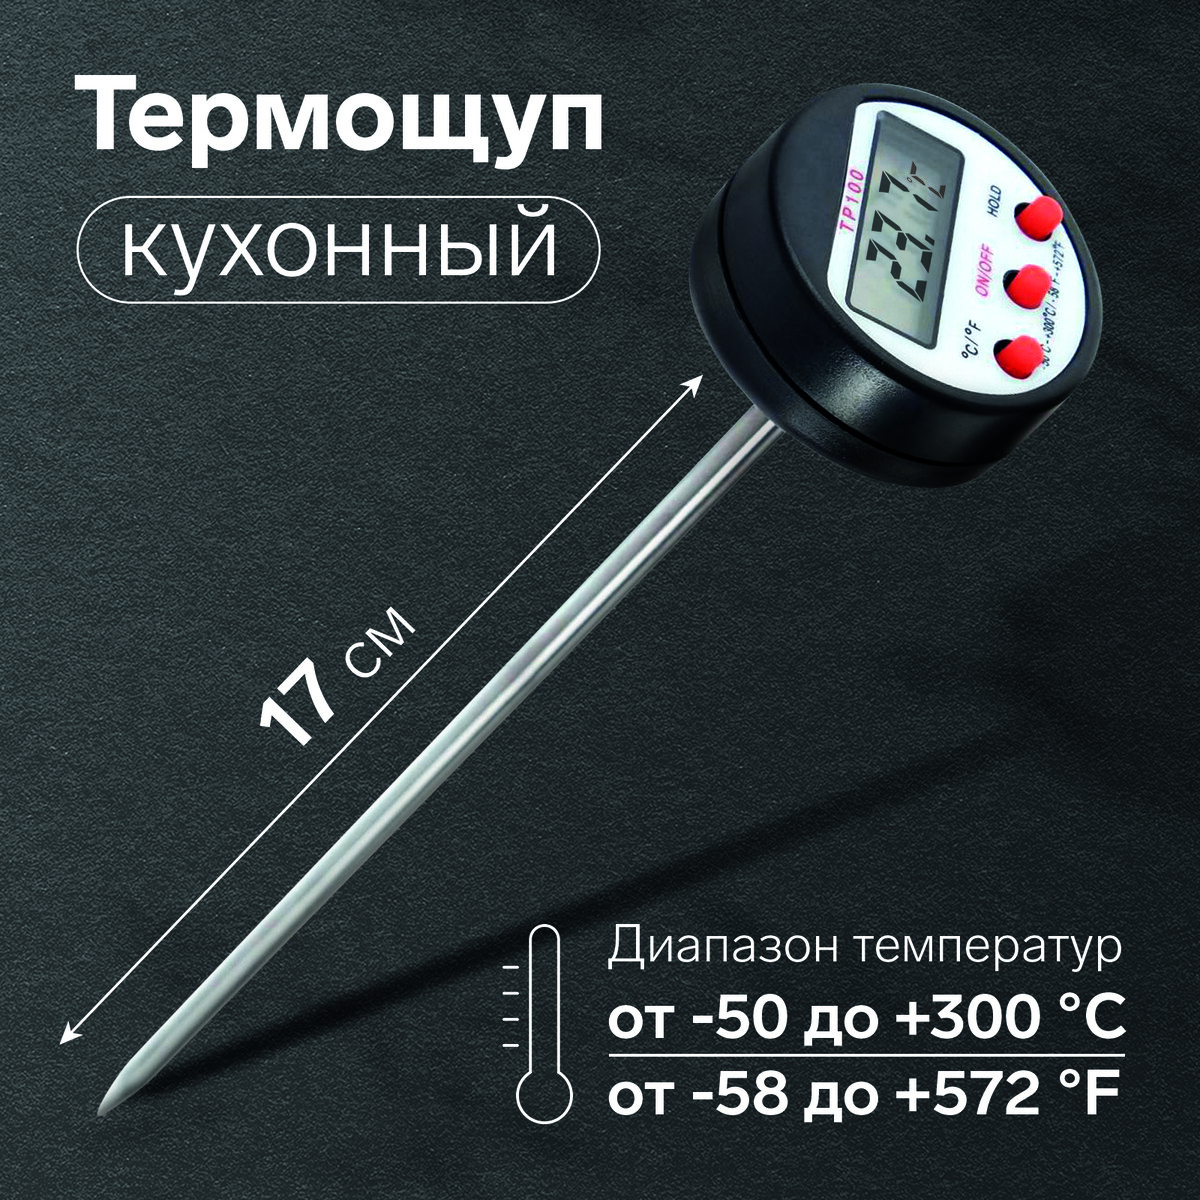 Термощуп кухонный tp-100, максимальная температура 300 °c, от lr44, черный термощуп кухонный ltr 08 макс темп 300 °c складной от ааа не в комплекте